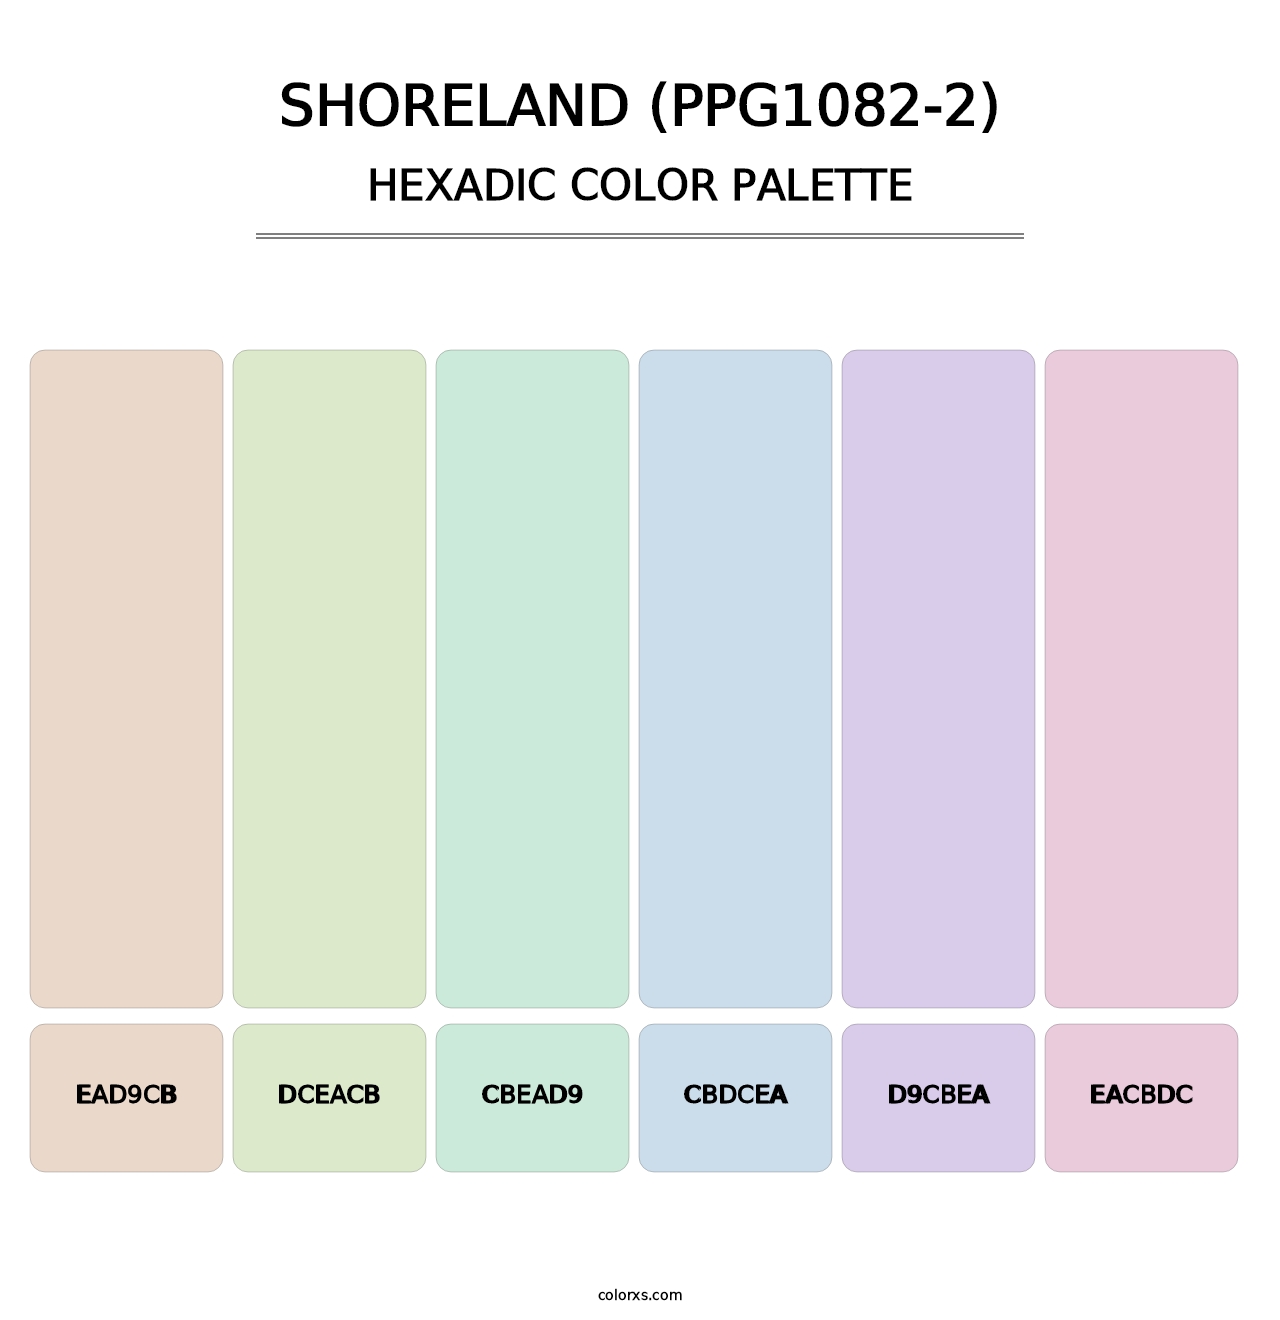 Shoreland (PPG1082-2) - Hexadic Color Palette